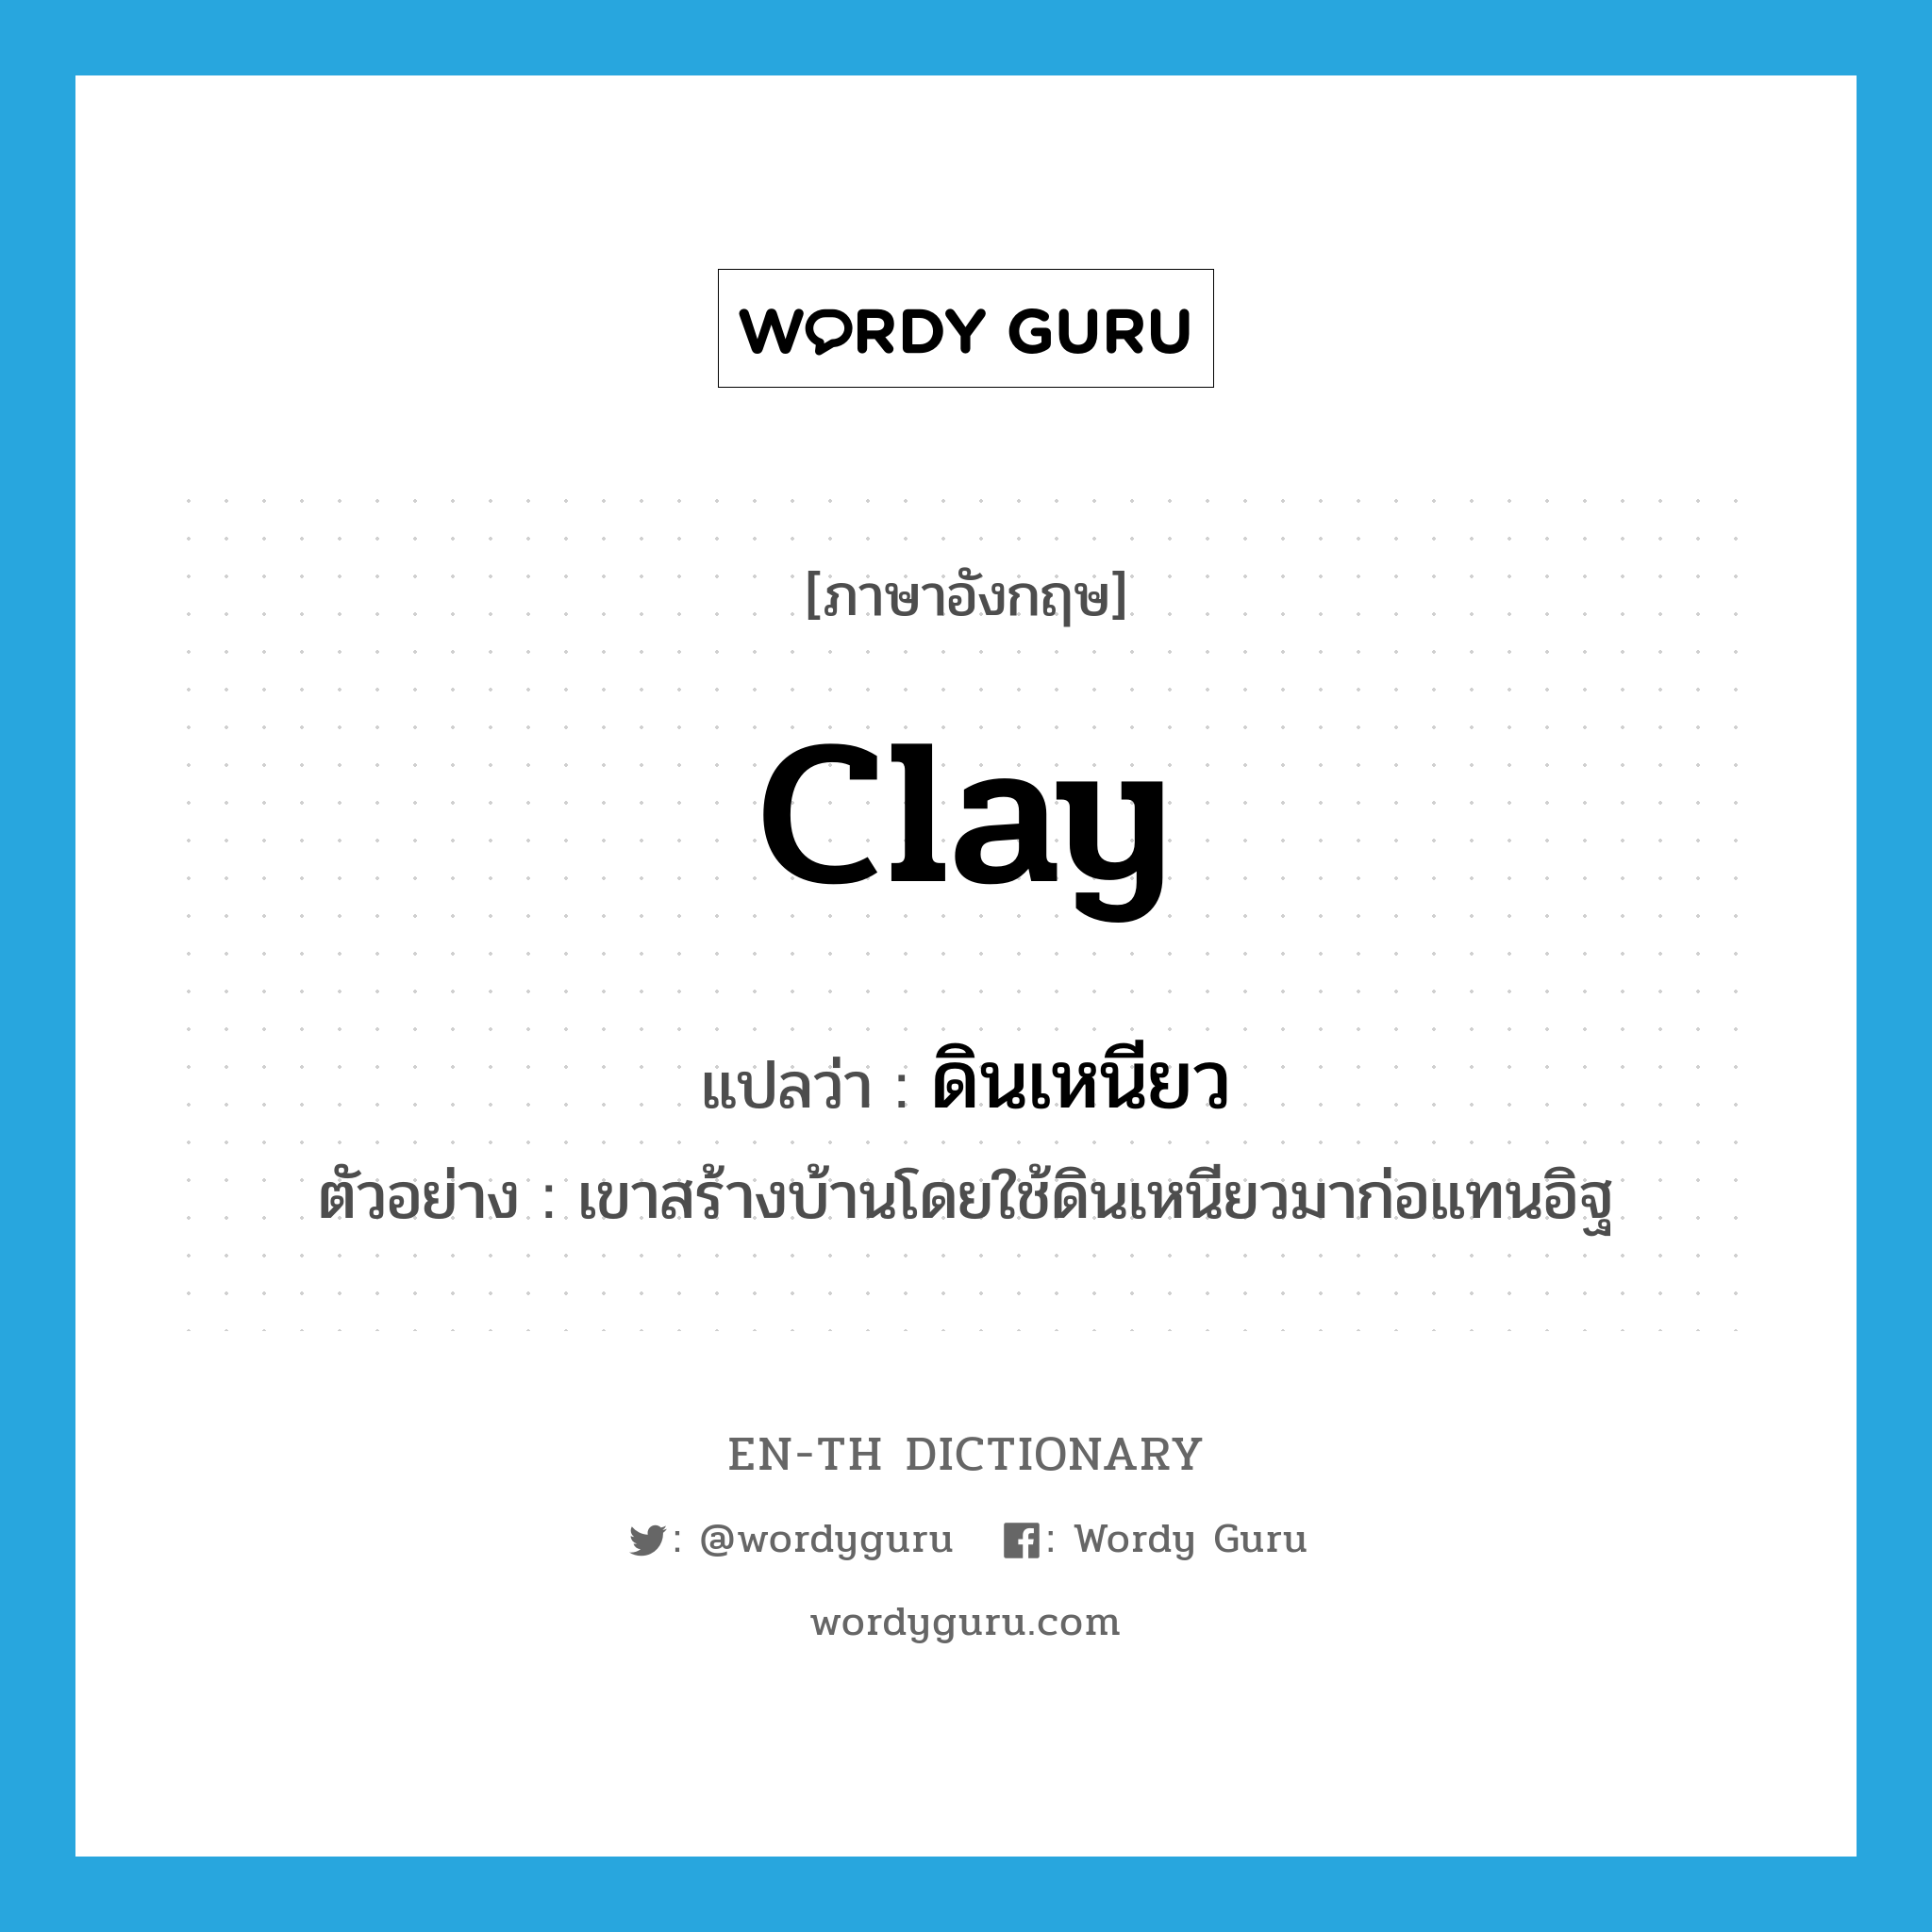 clay แปลว่า?, คำศัพท์ภาษาอังกฤษ clay แปลว่า ดินเหนียว ประเภท N ตัวอย่าง เขาสร้างบ้านโดยใช้ดินเหนียวมาก่อแทนอิฐ หมวด N